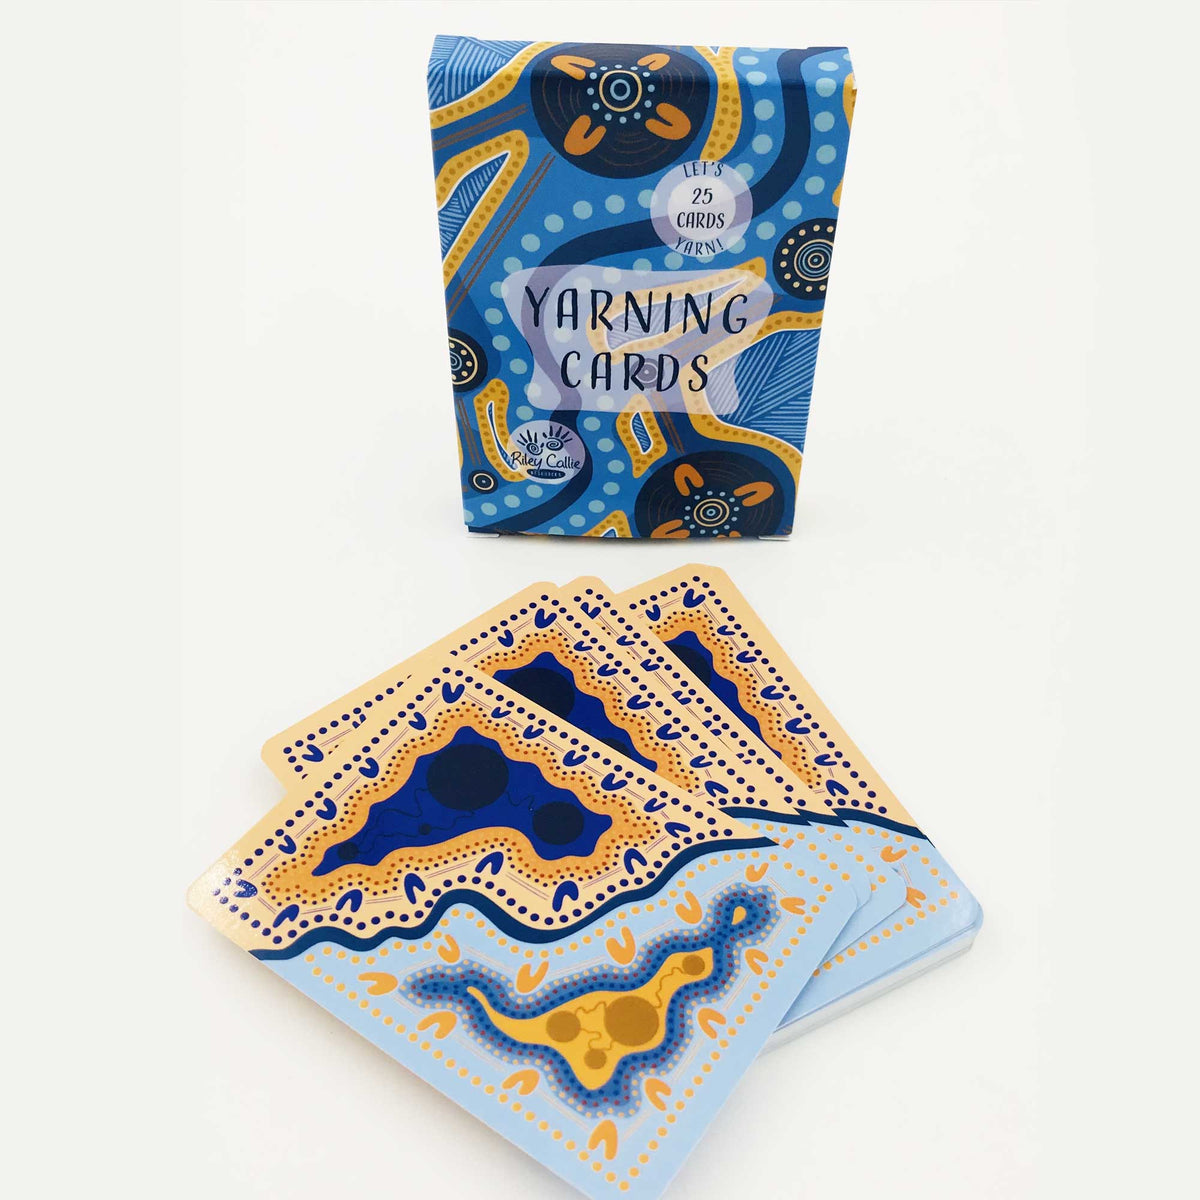 Yarning Cards - Let's Yarn!